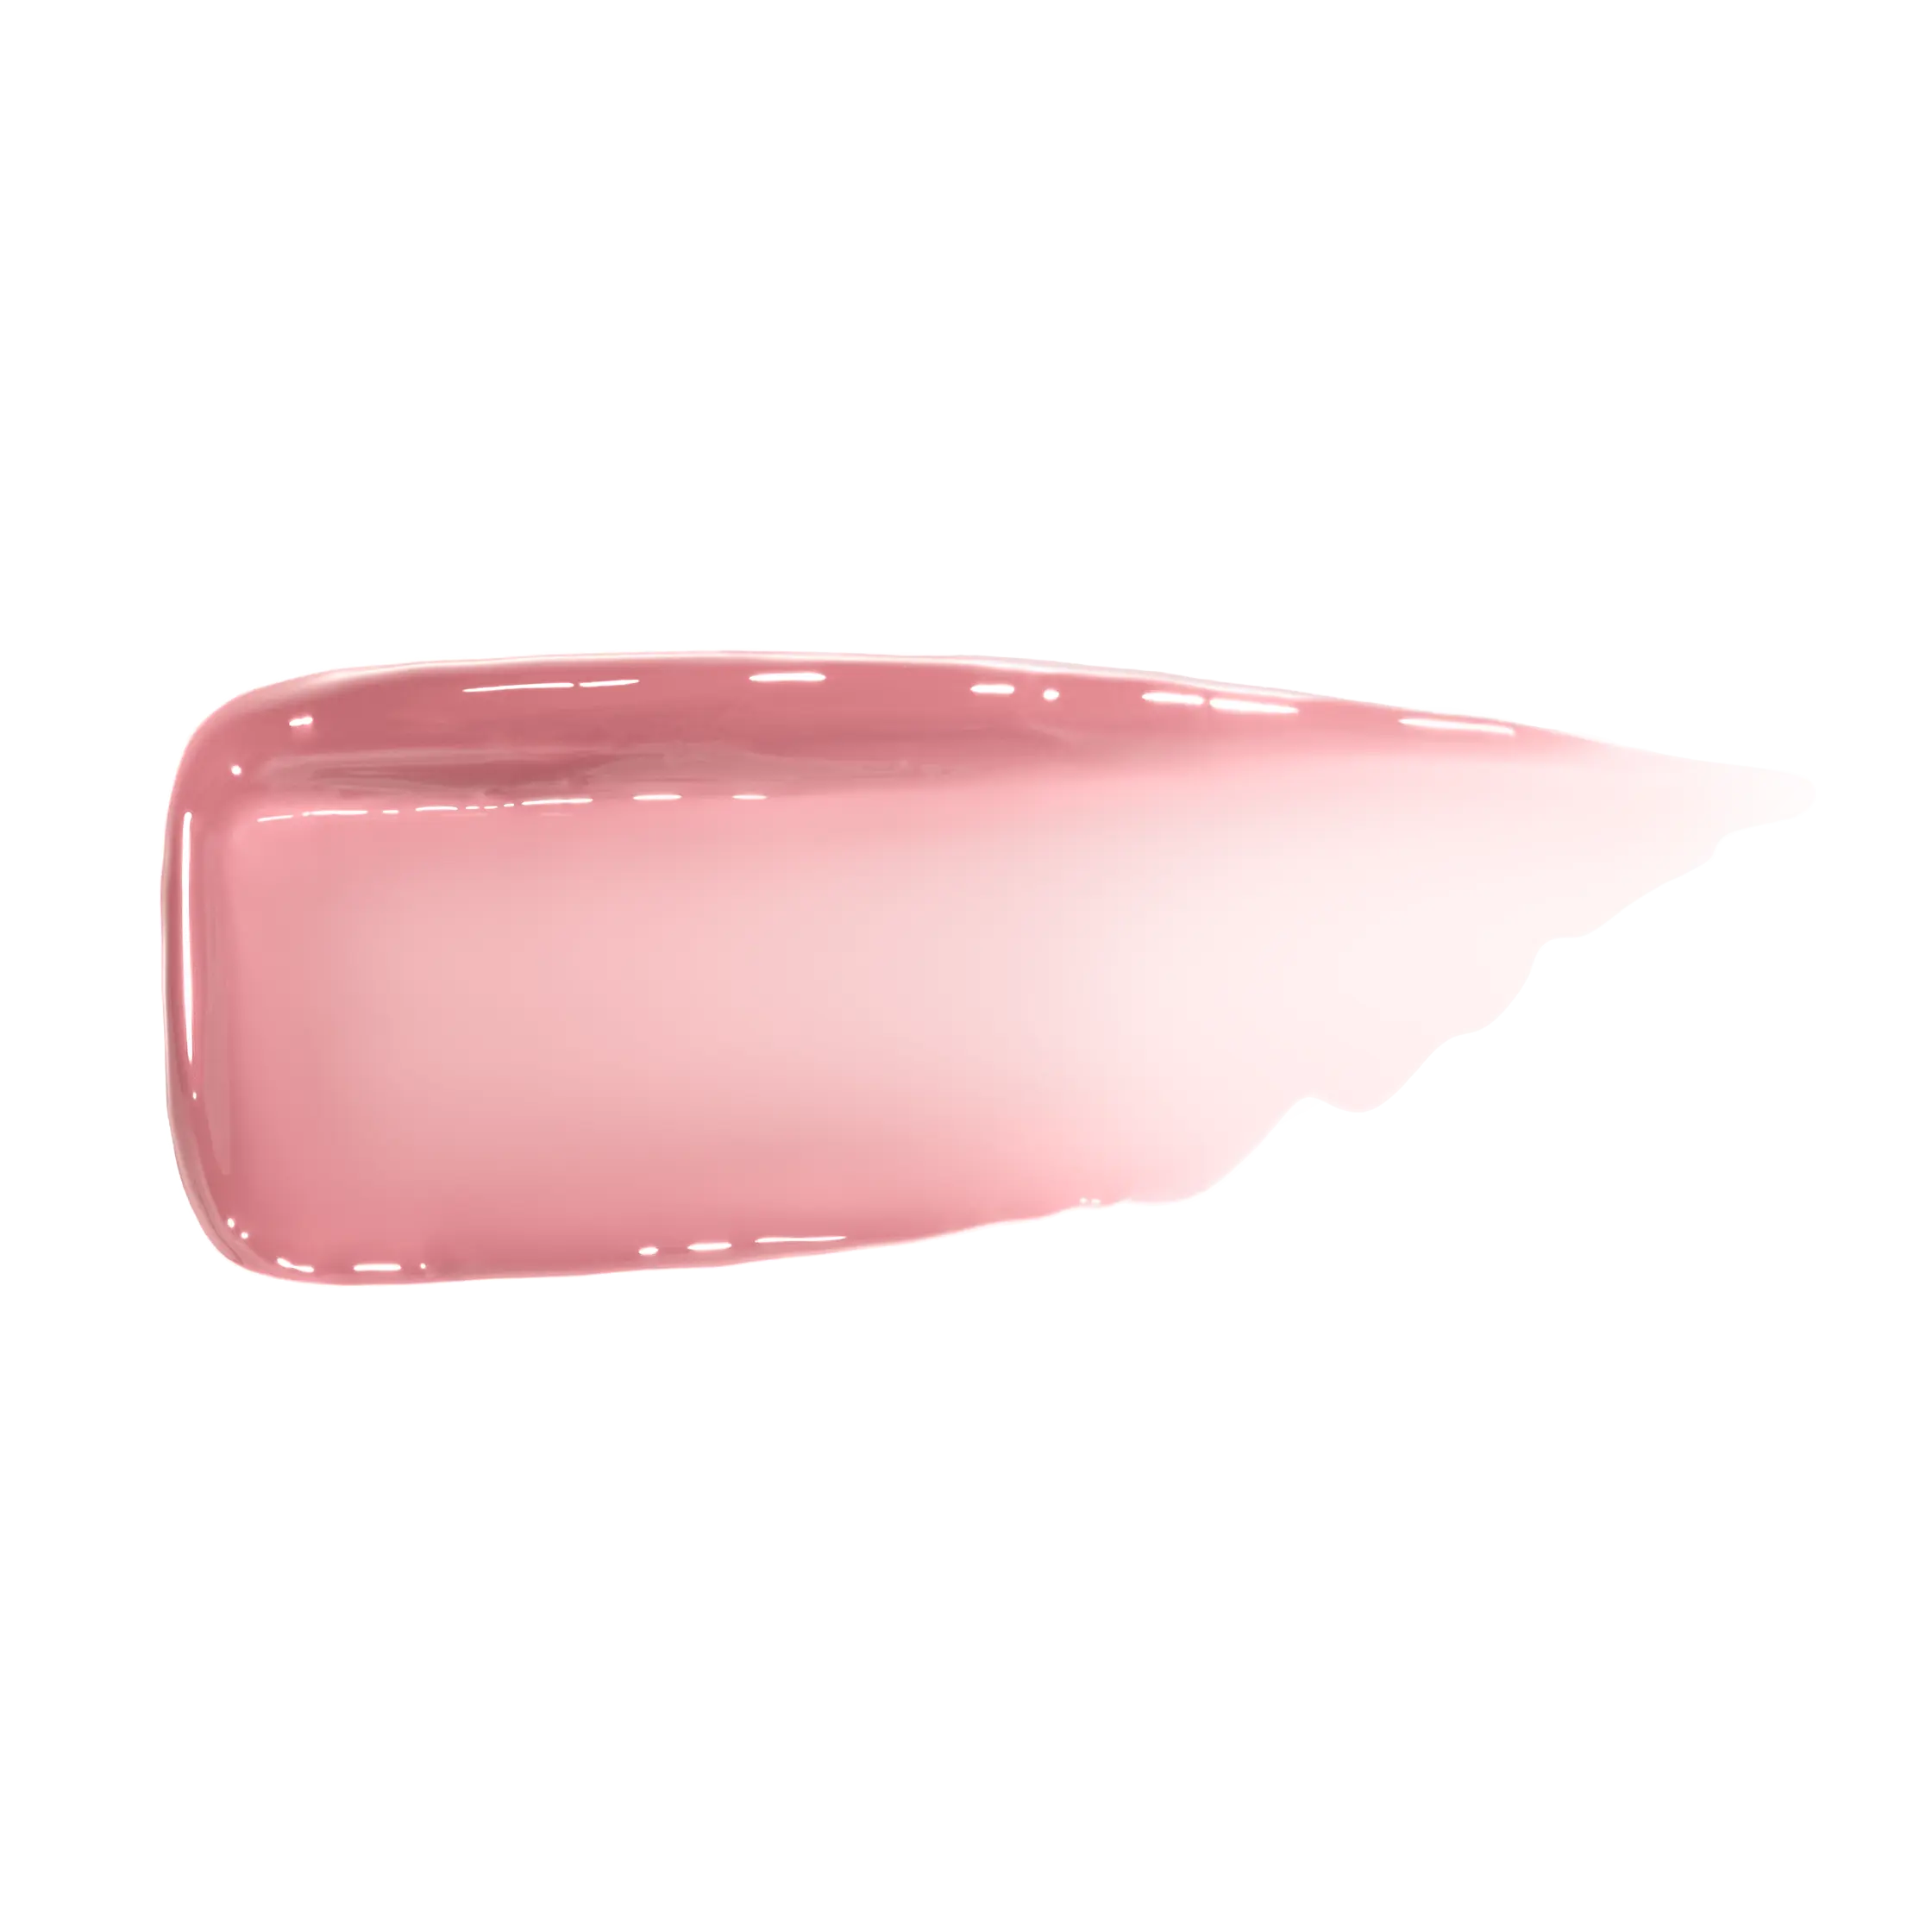 Wet Cherry Lip Gloss variant:Naked Cherry